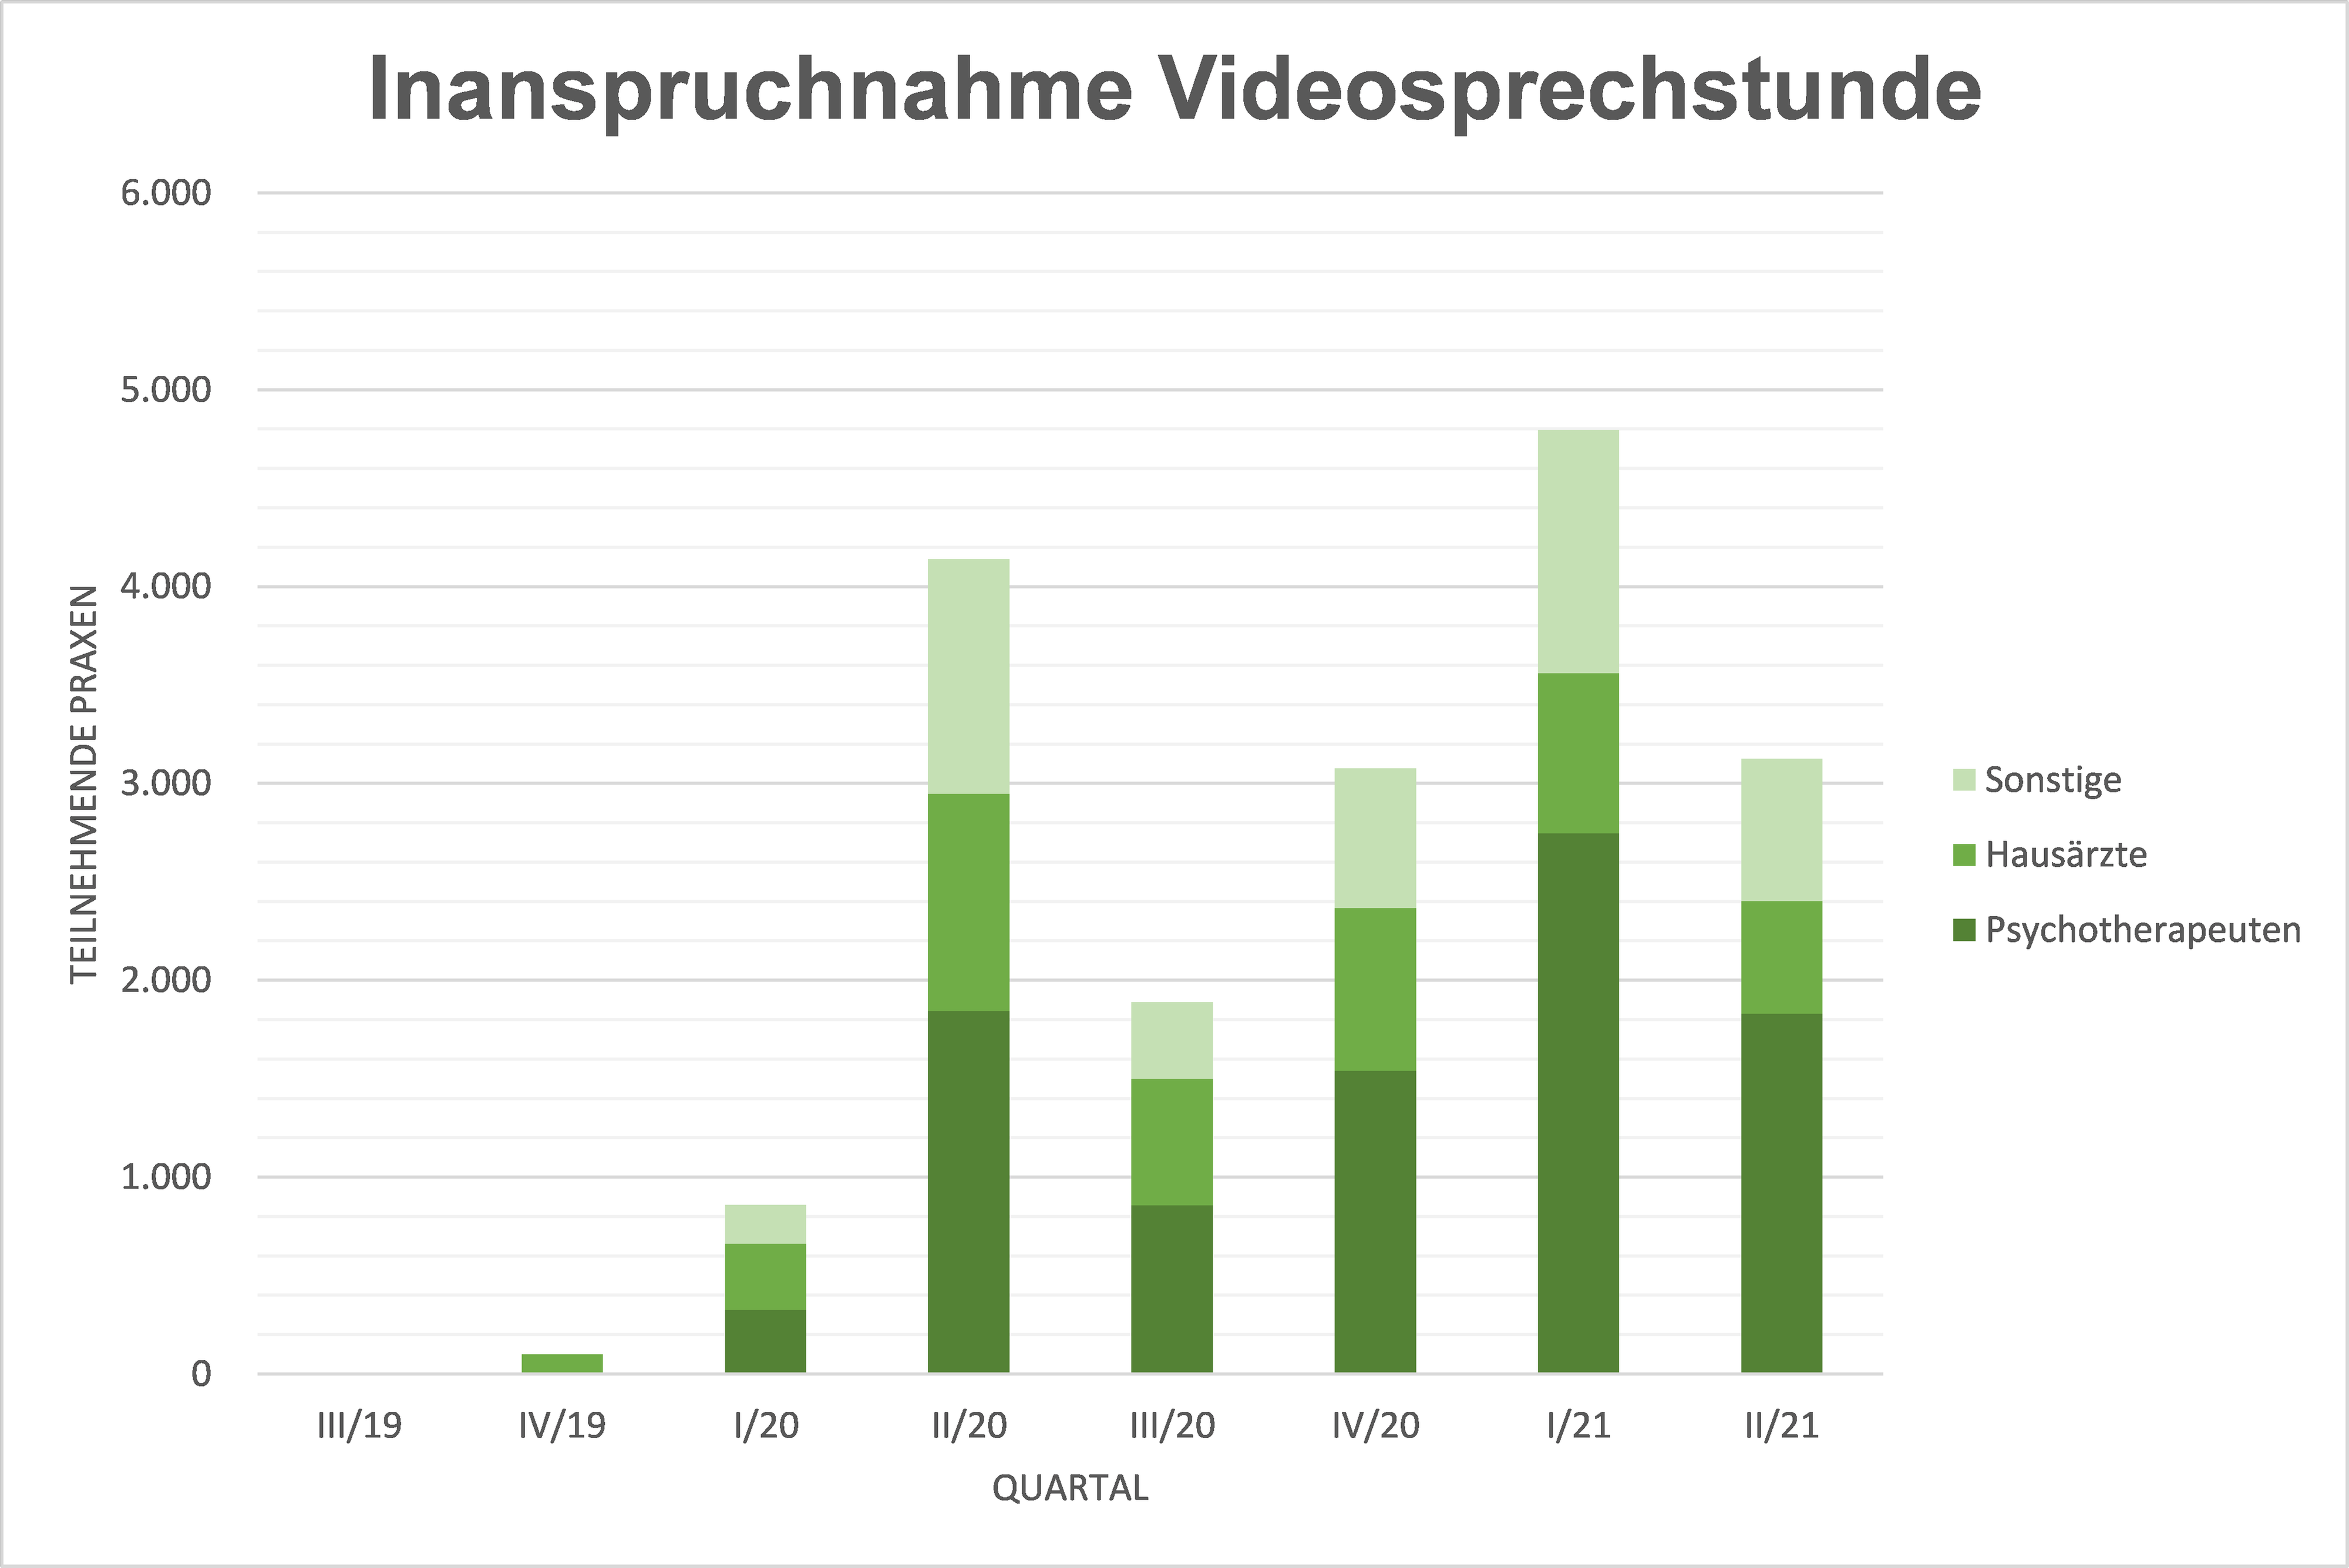 Grafik über die Inanspruchnahme von Videosprechstunden in Schleswig-Holstein unterteilt nach Hausärzten, Psychotherapeuten und s